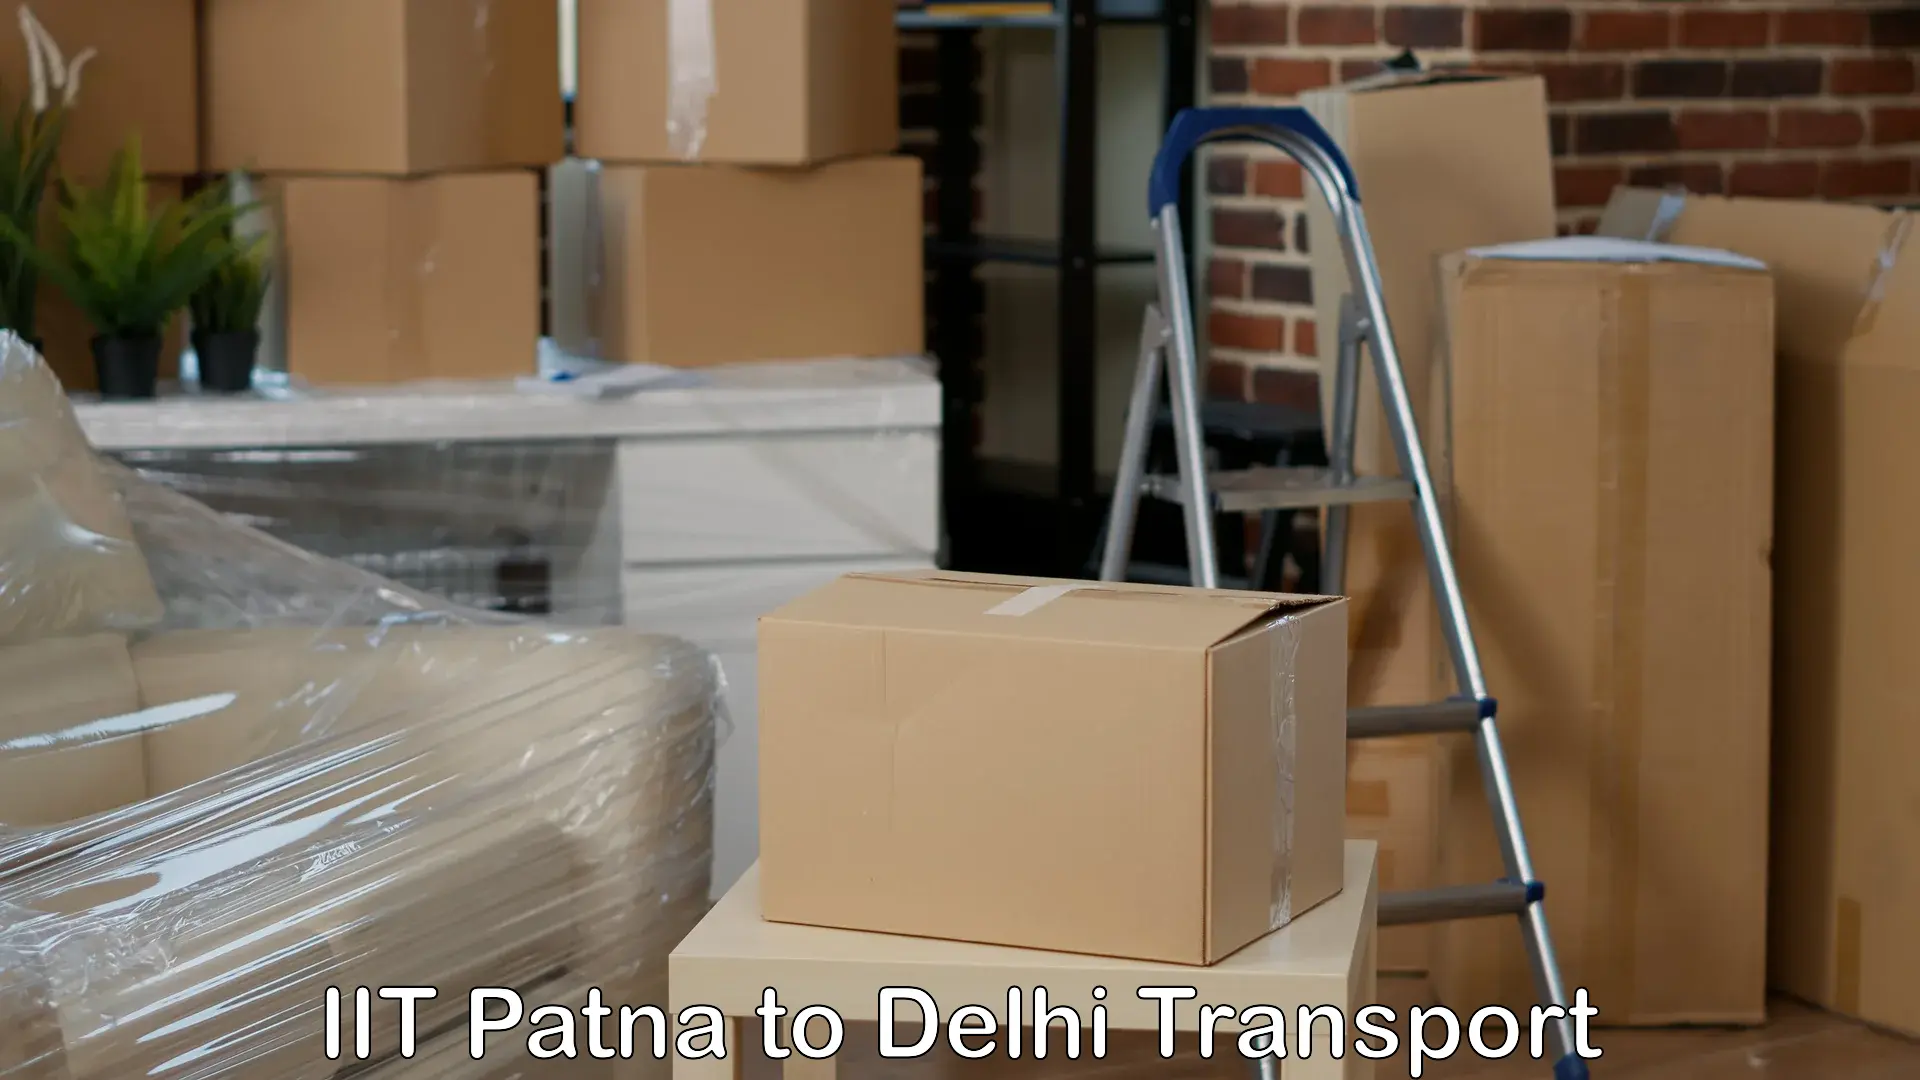 Door to door transport services IIT Patna to Kalkaji